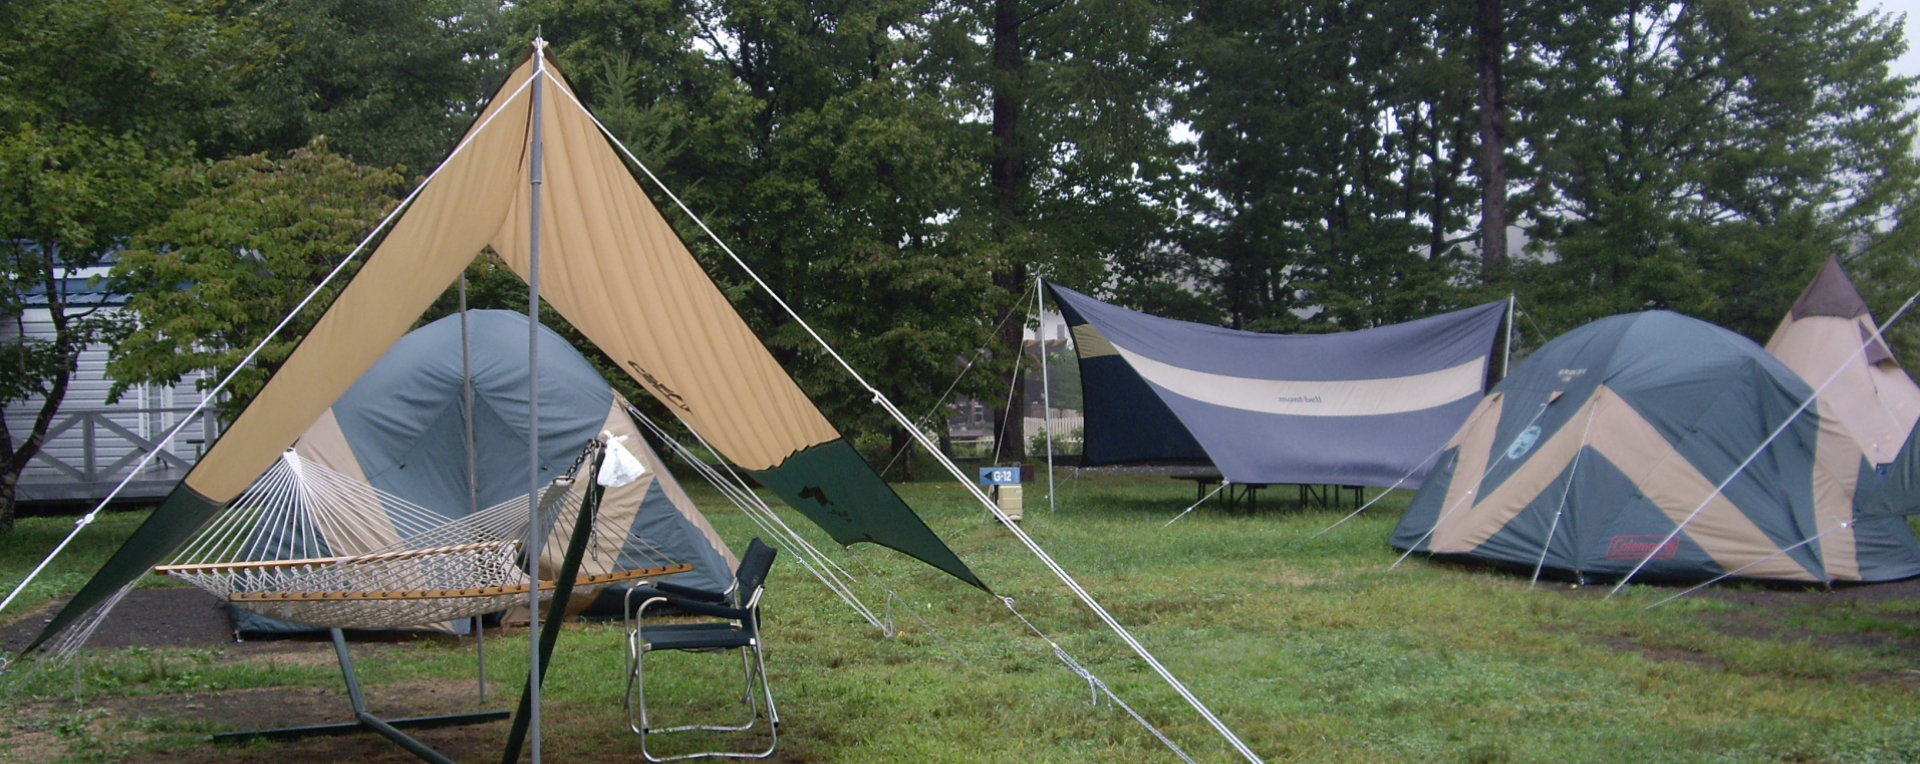 キャンプにタープ タープテント がおすすめな理由とは 他種のタープとの比較 タープテントのことならアイテント Itent